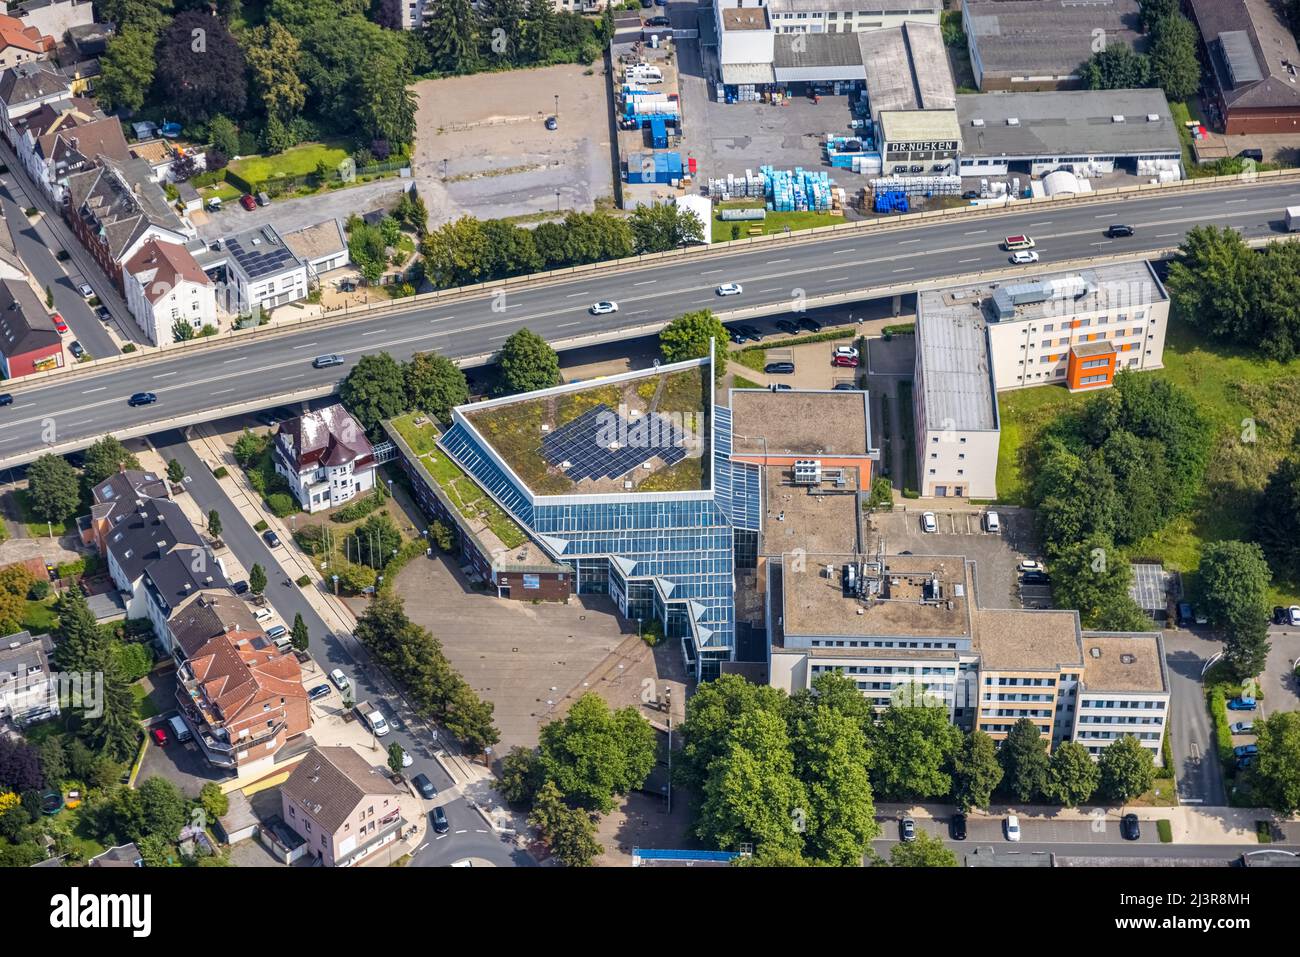 Aerial view, Kamen town hall on Hochstraße in Kamen, Ruhr area, North Rhine-Westphalia, Germany, Luftbild, Rathaus Kamen Stadtverwaltung an der Hochst Stock Photo